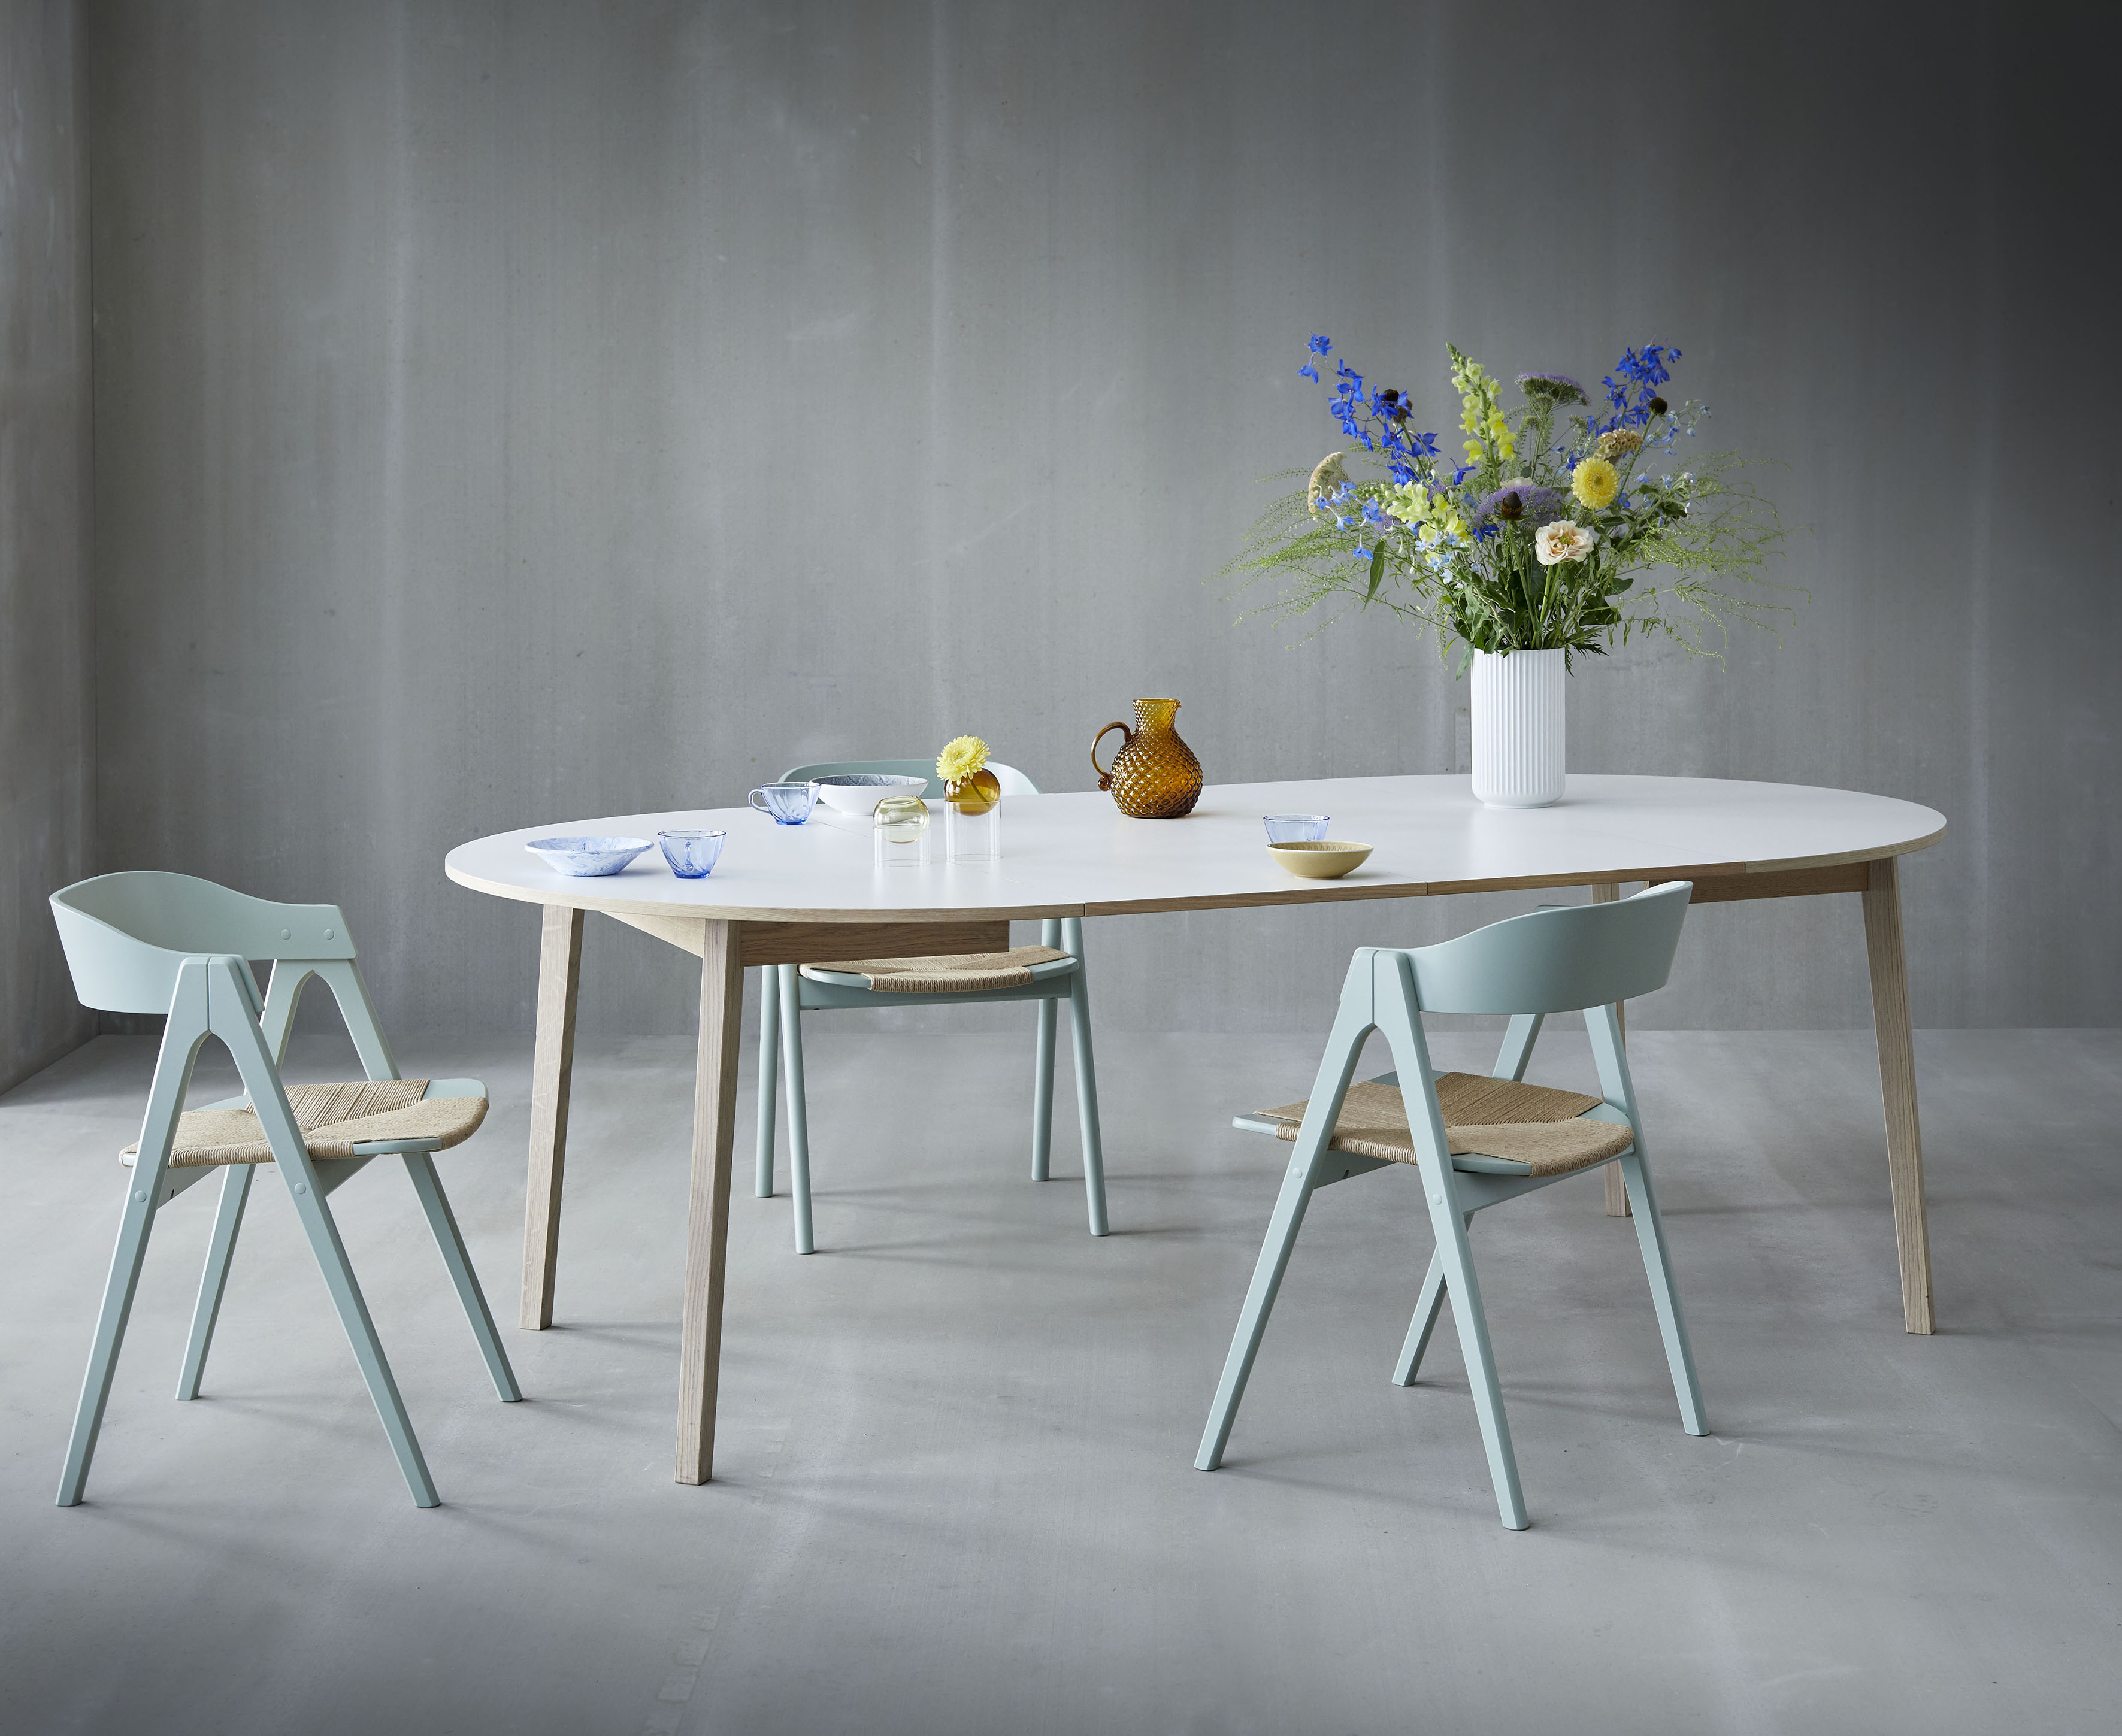 Hammel Furniture Esstisch Single, Tischplatte aus weißem Melamin und Gestell in Massivholz. Ø 130 cm. Inkl. 2 Einlegeplatten